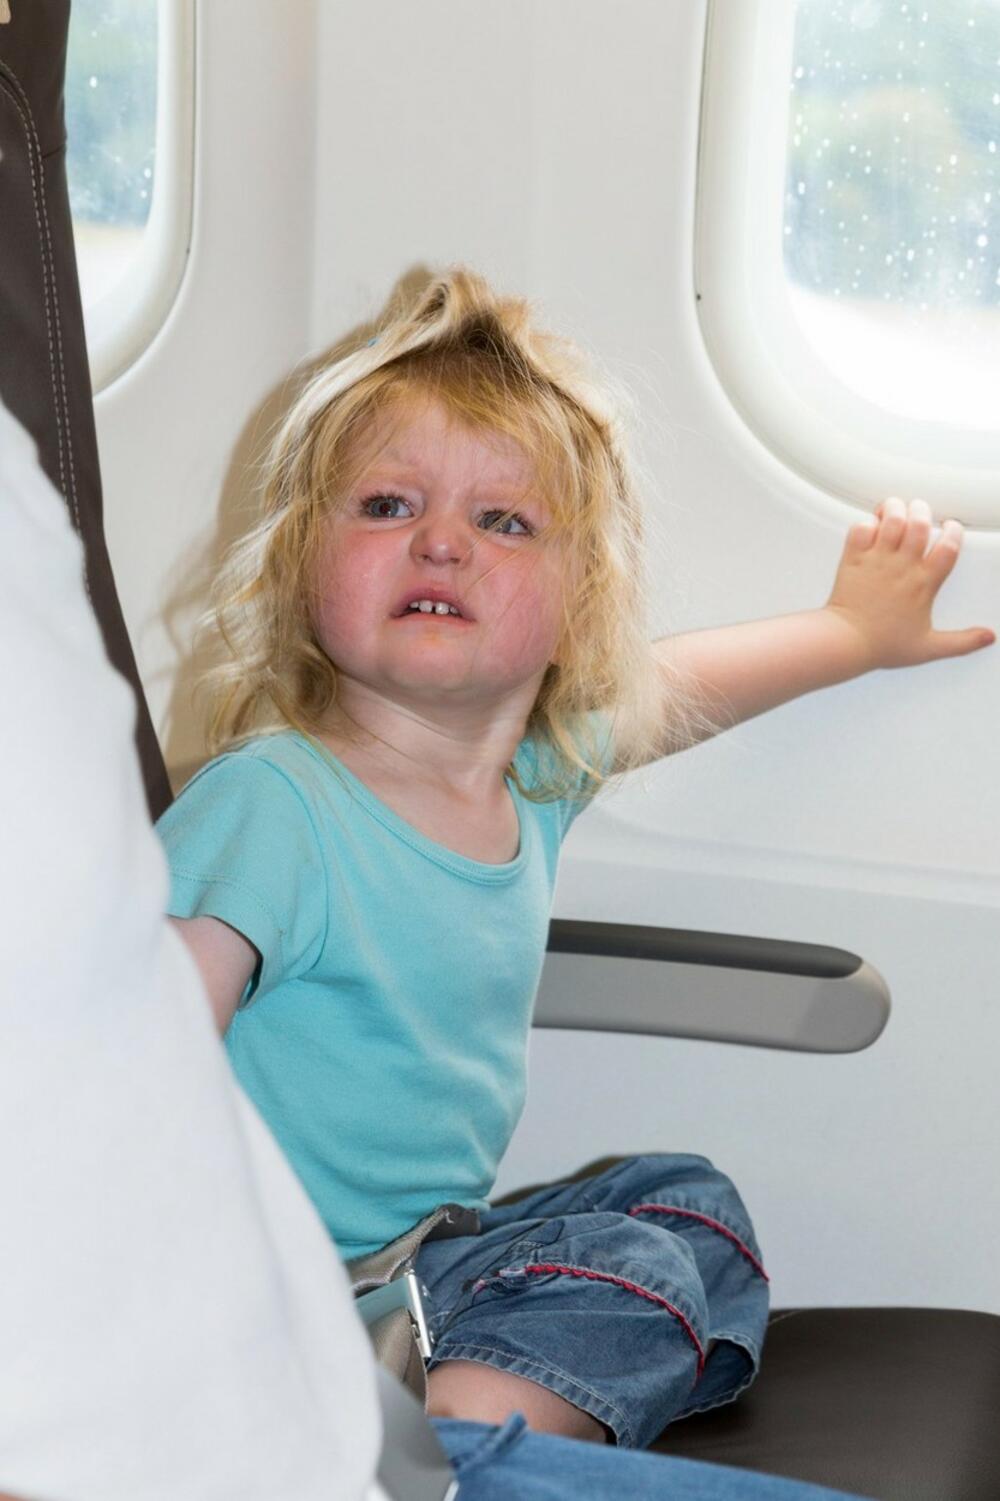 beba u avionu